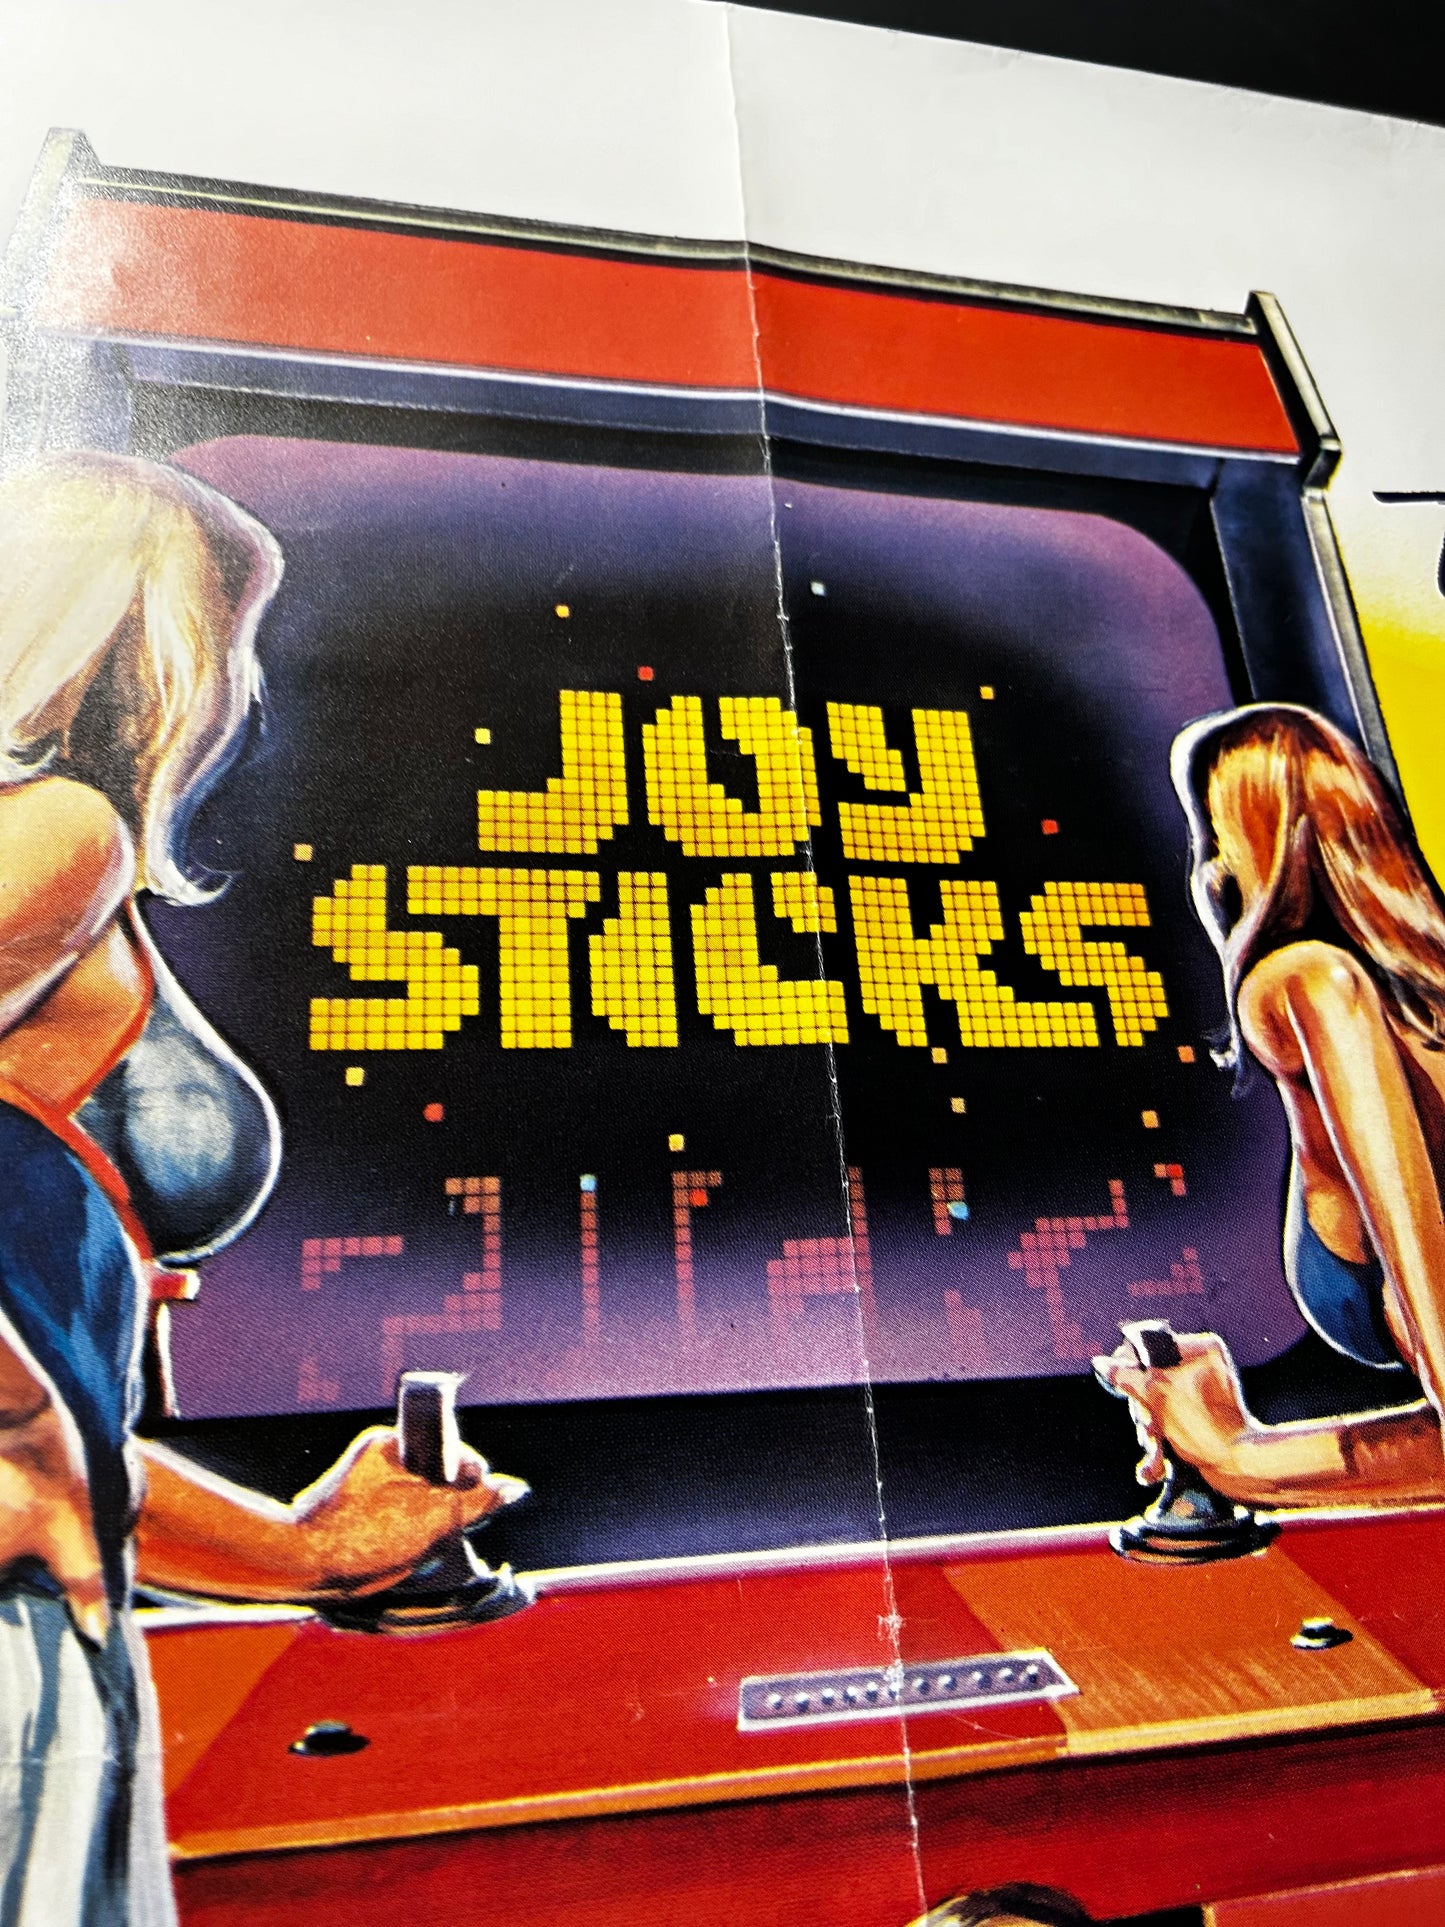 Joy Sticks Original UK Quad Poster 1983